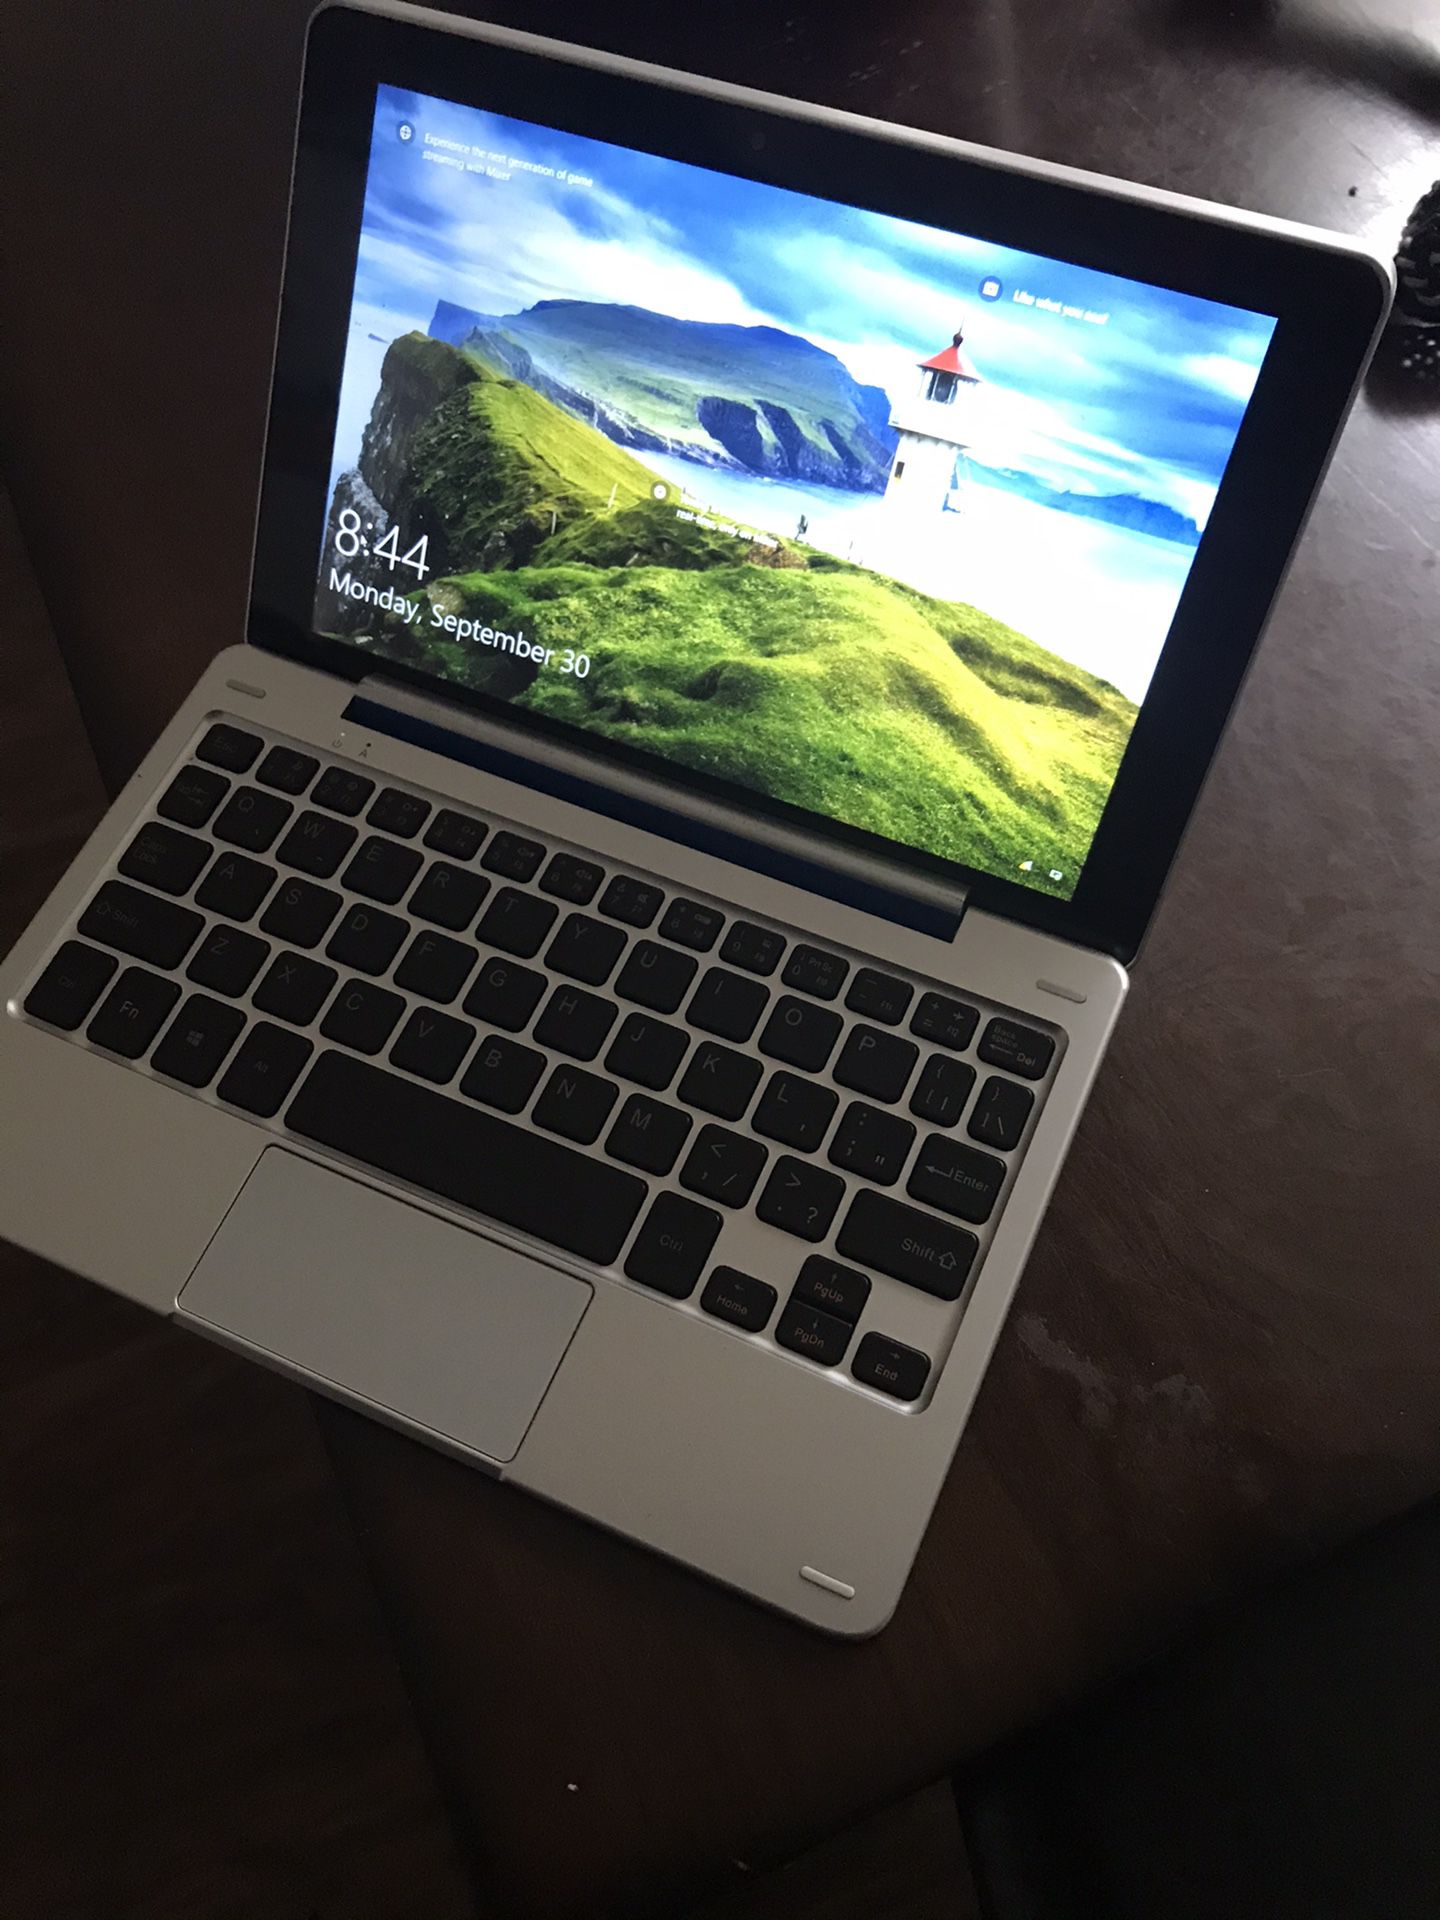 Nextbook tablet/ laptop